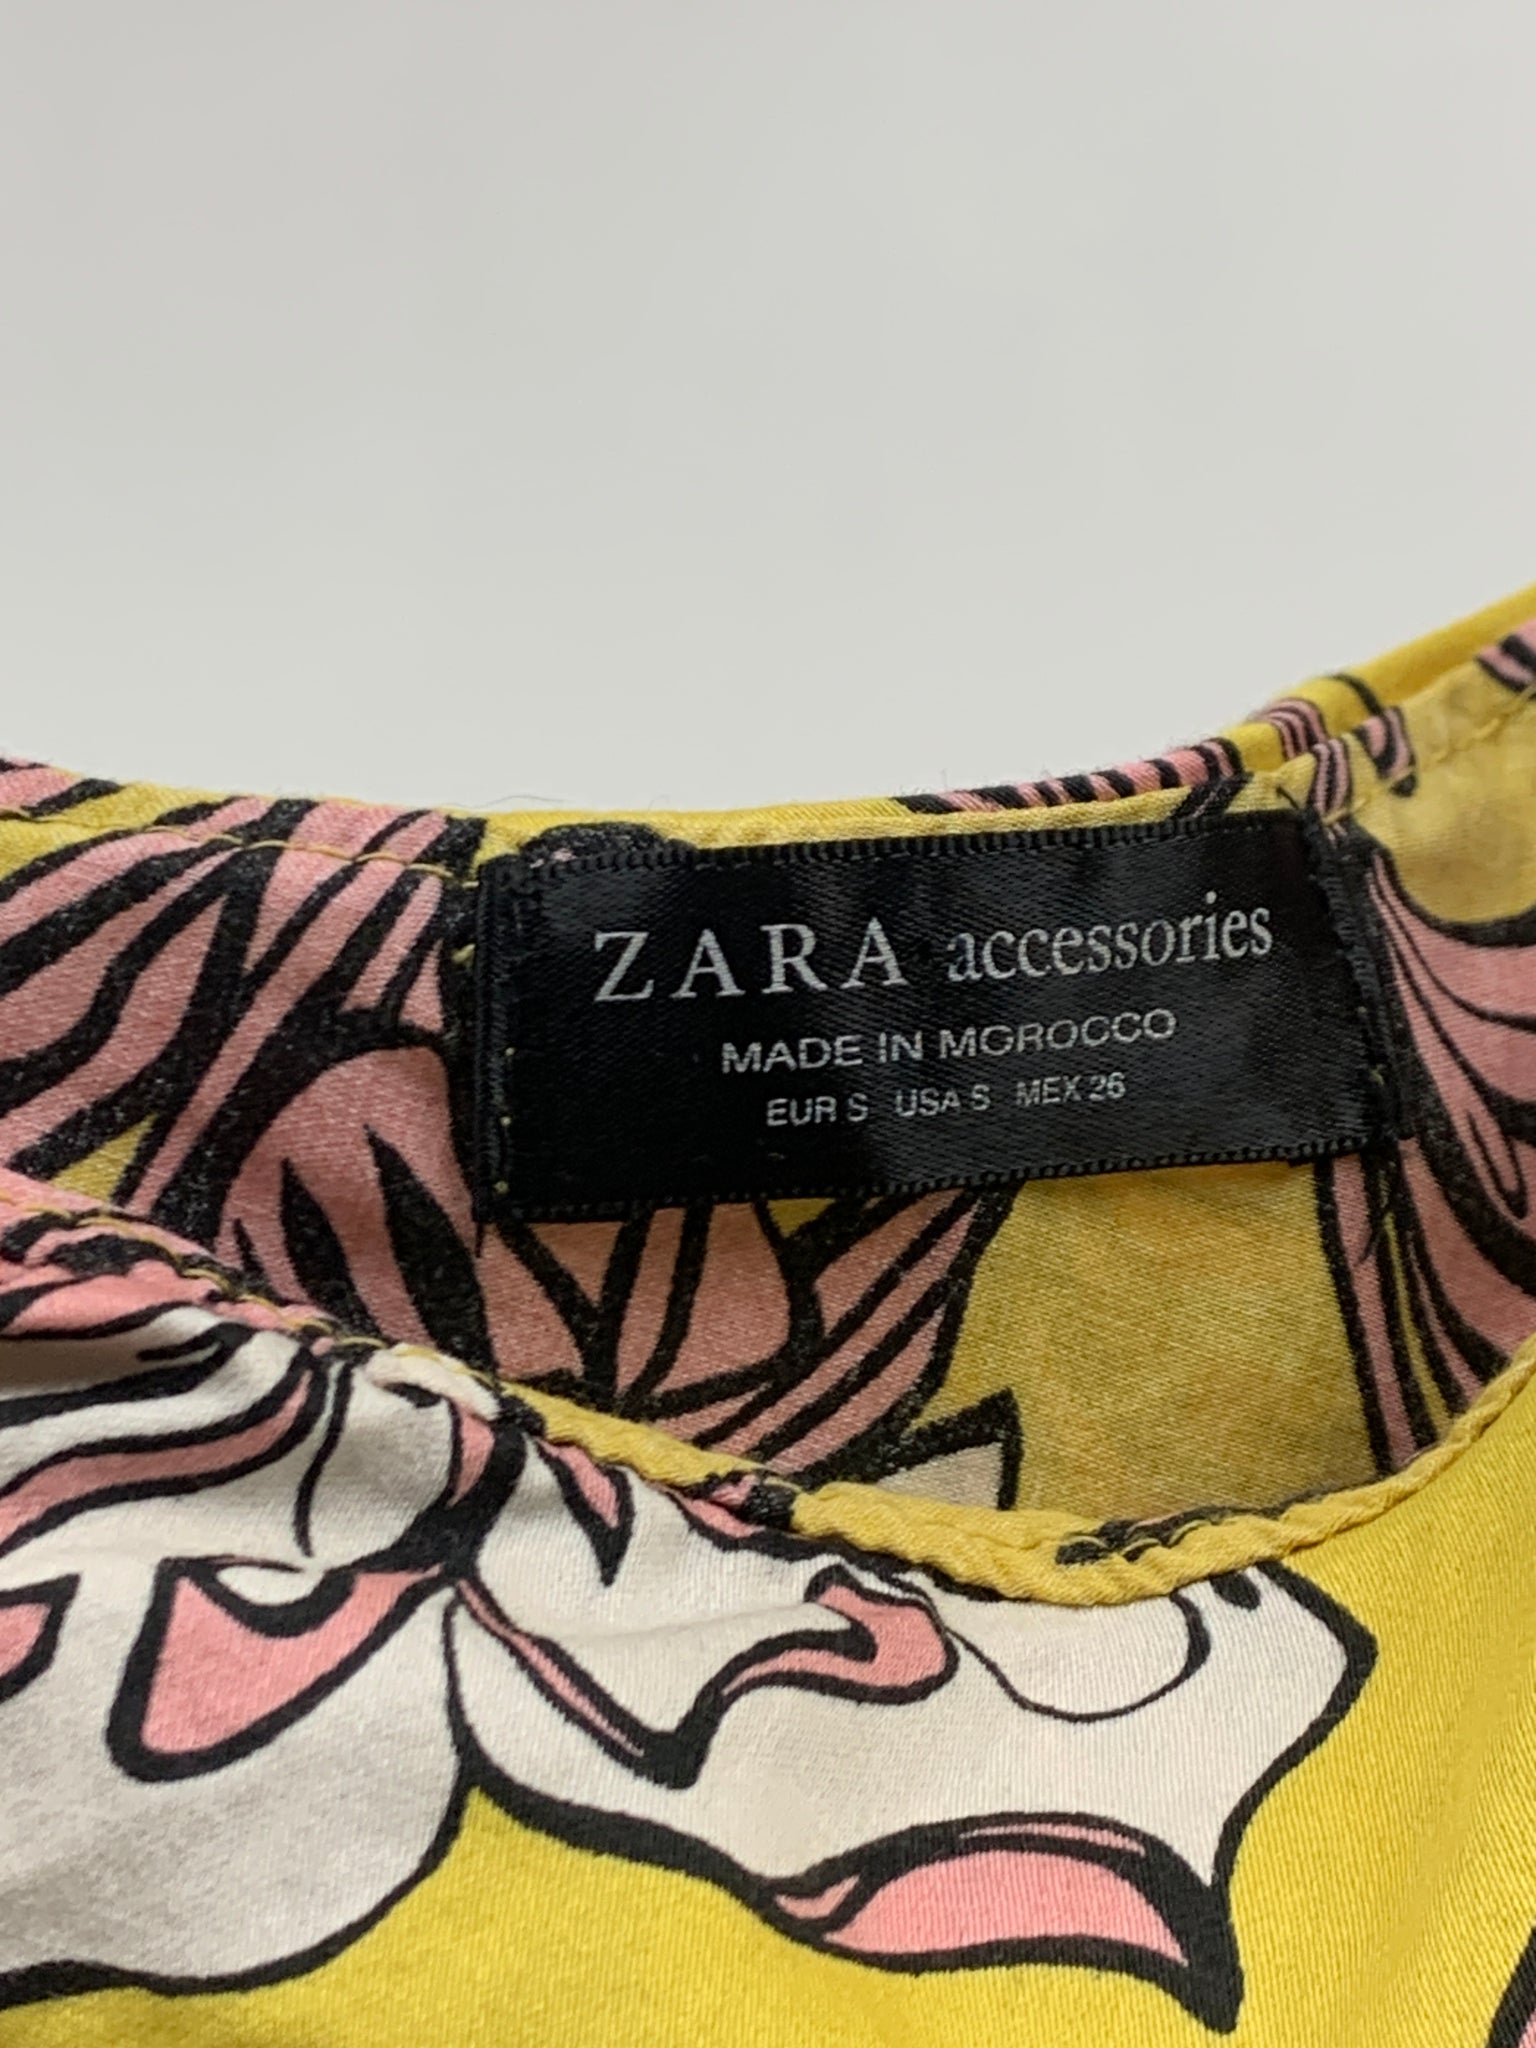 Zara body stocking